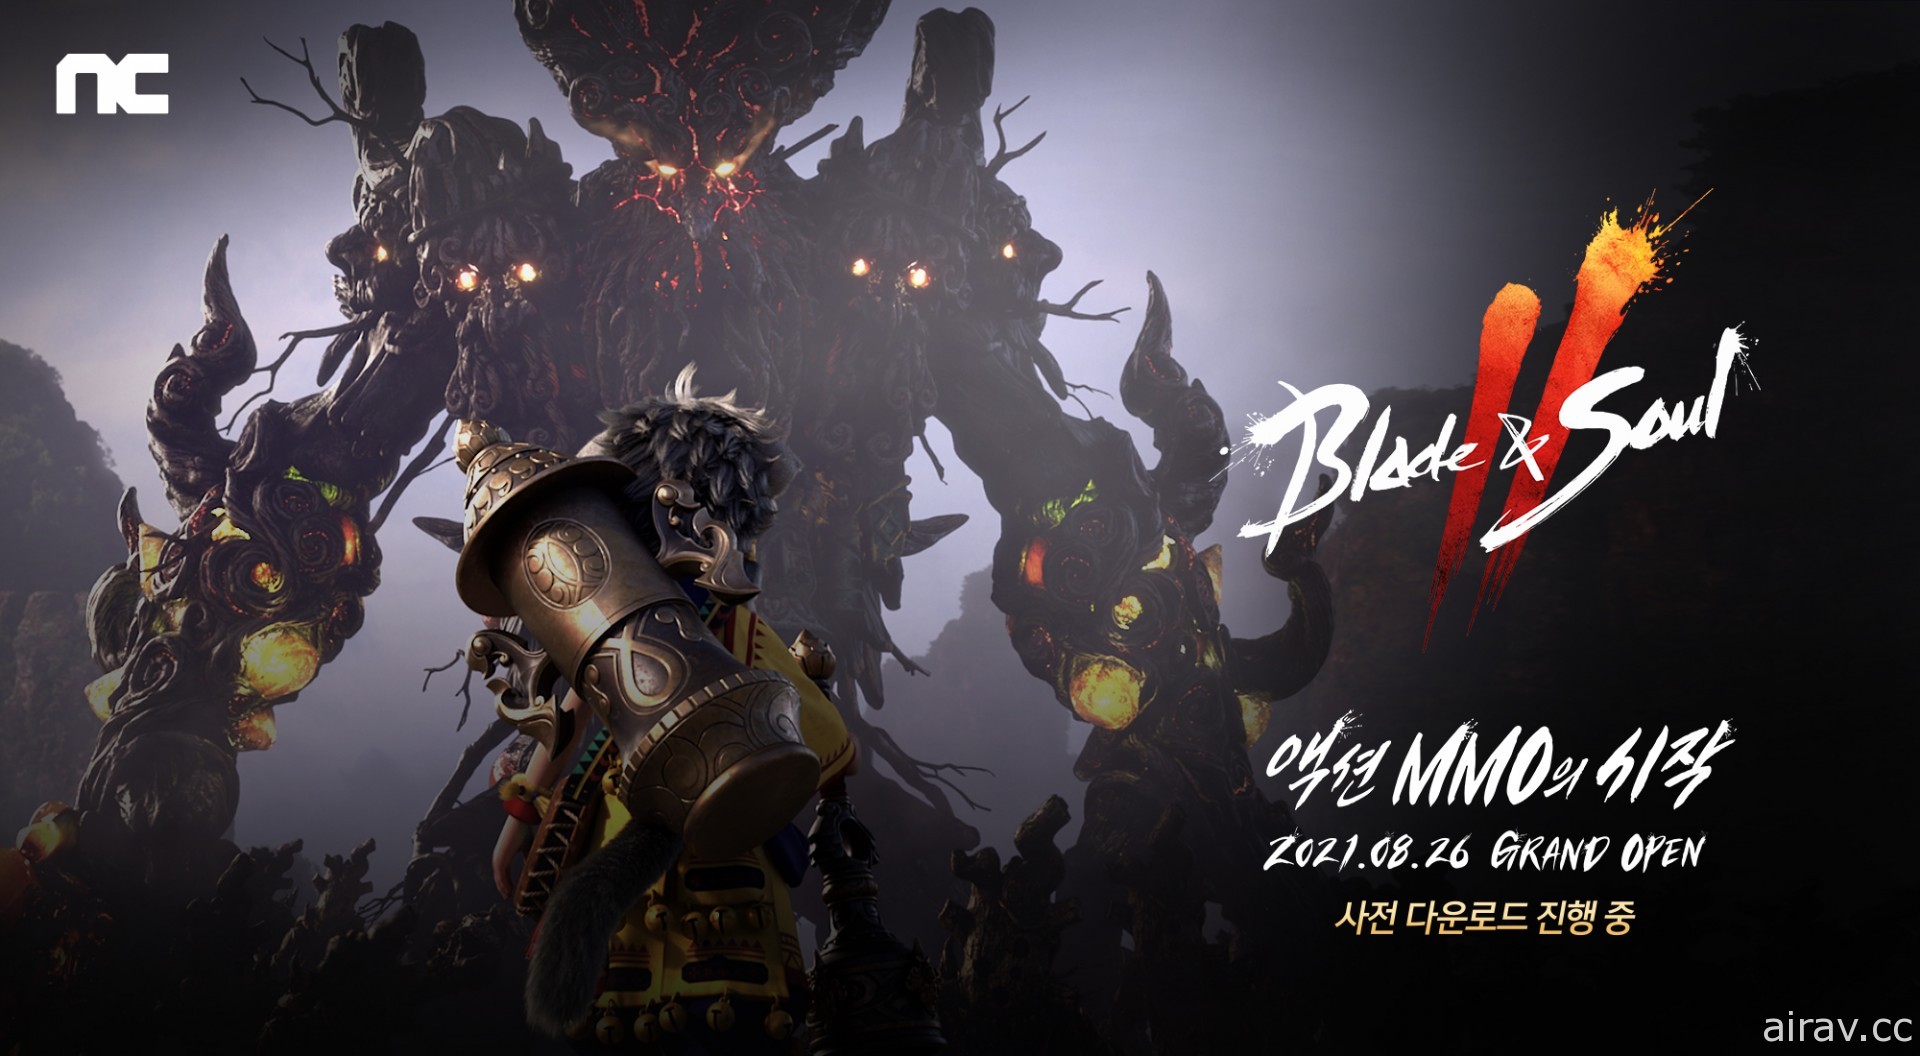 《劍靈 2》於韓國開放預先下載 共計 746 萬預先註冊數量打破《天堂 2 M》紀錄